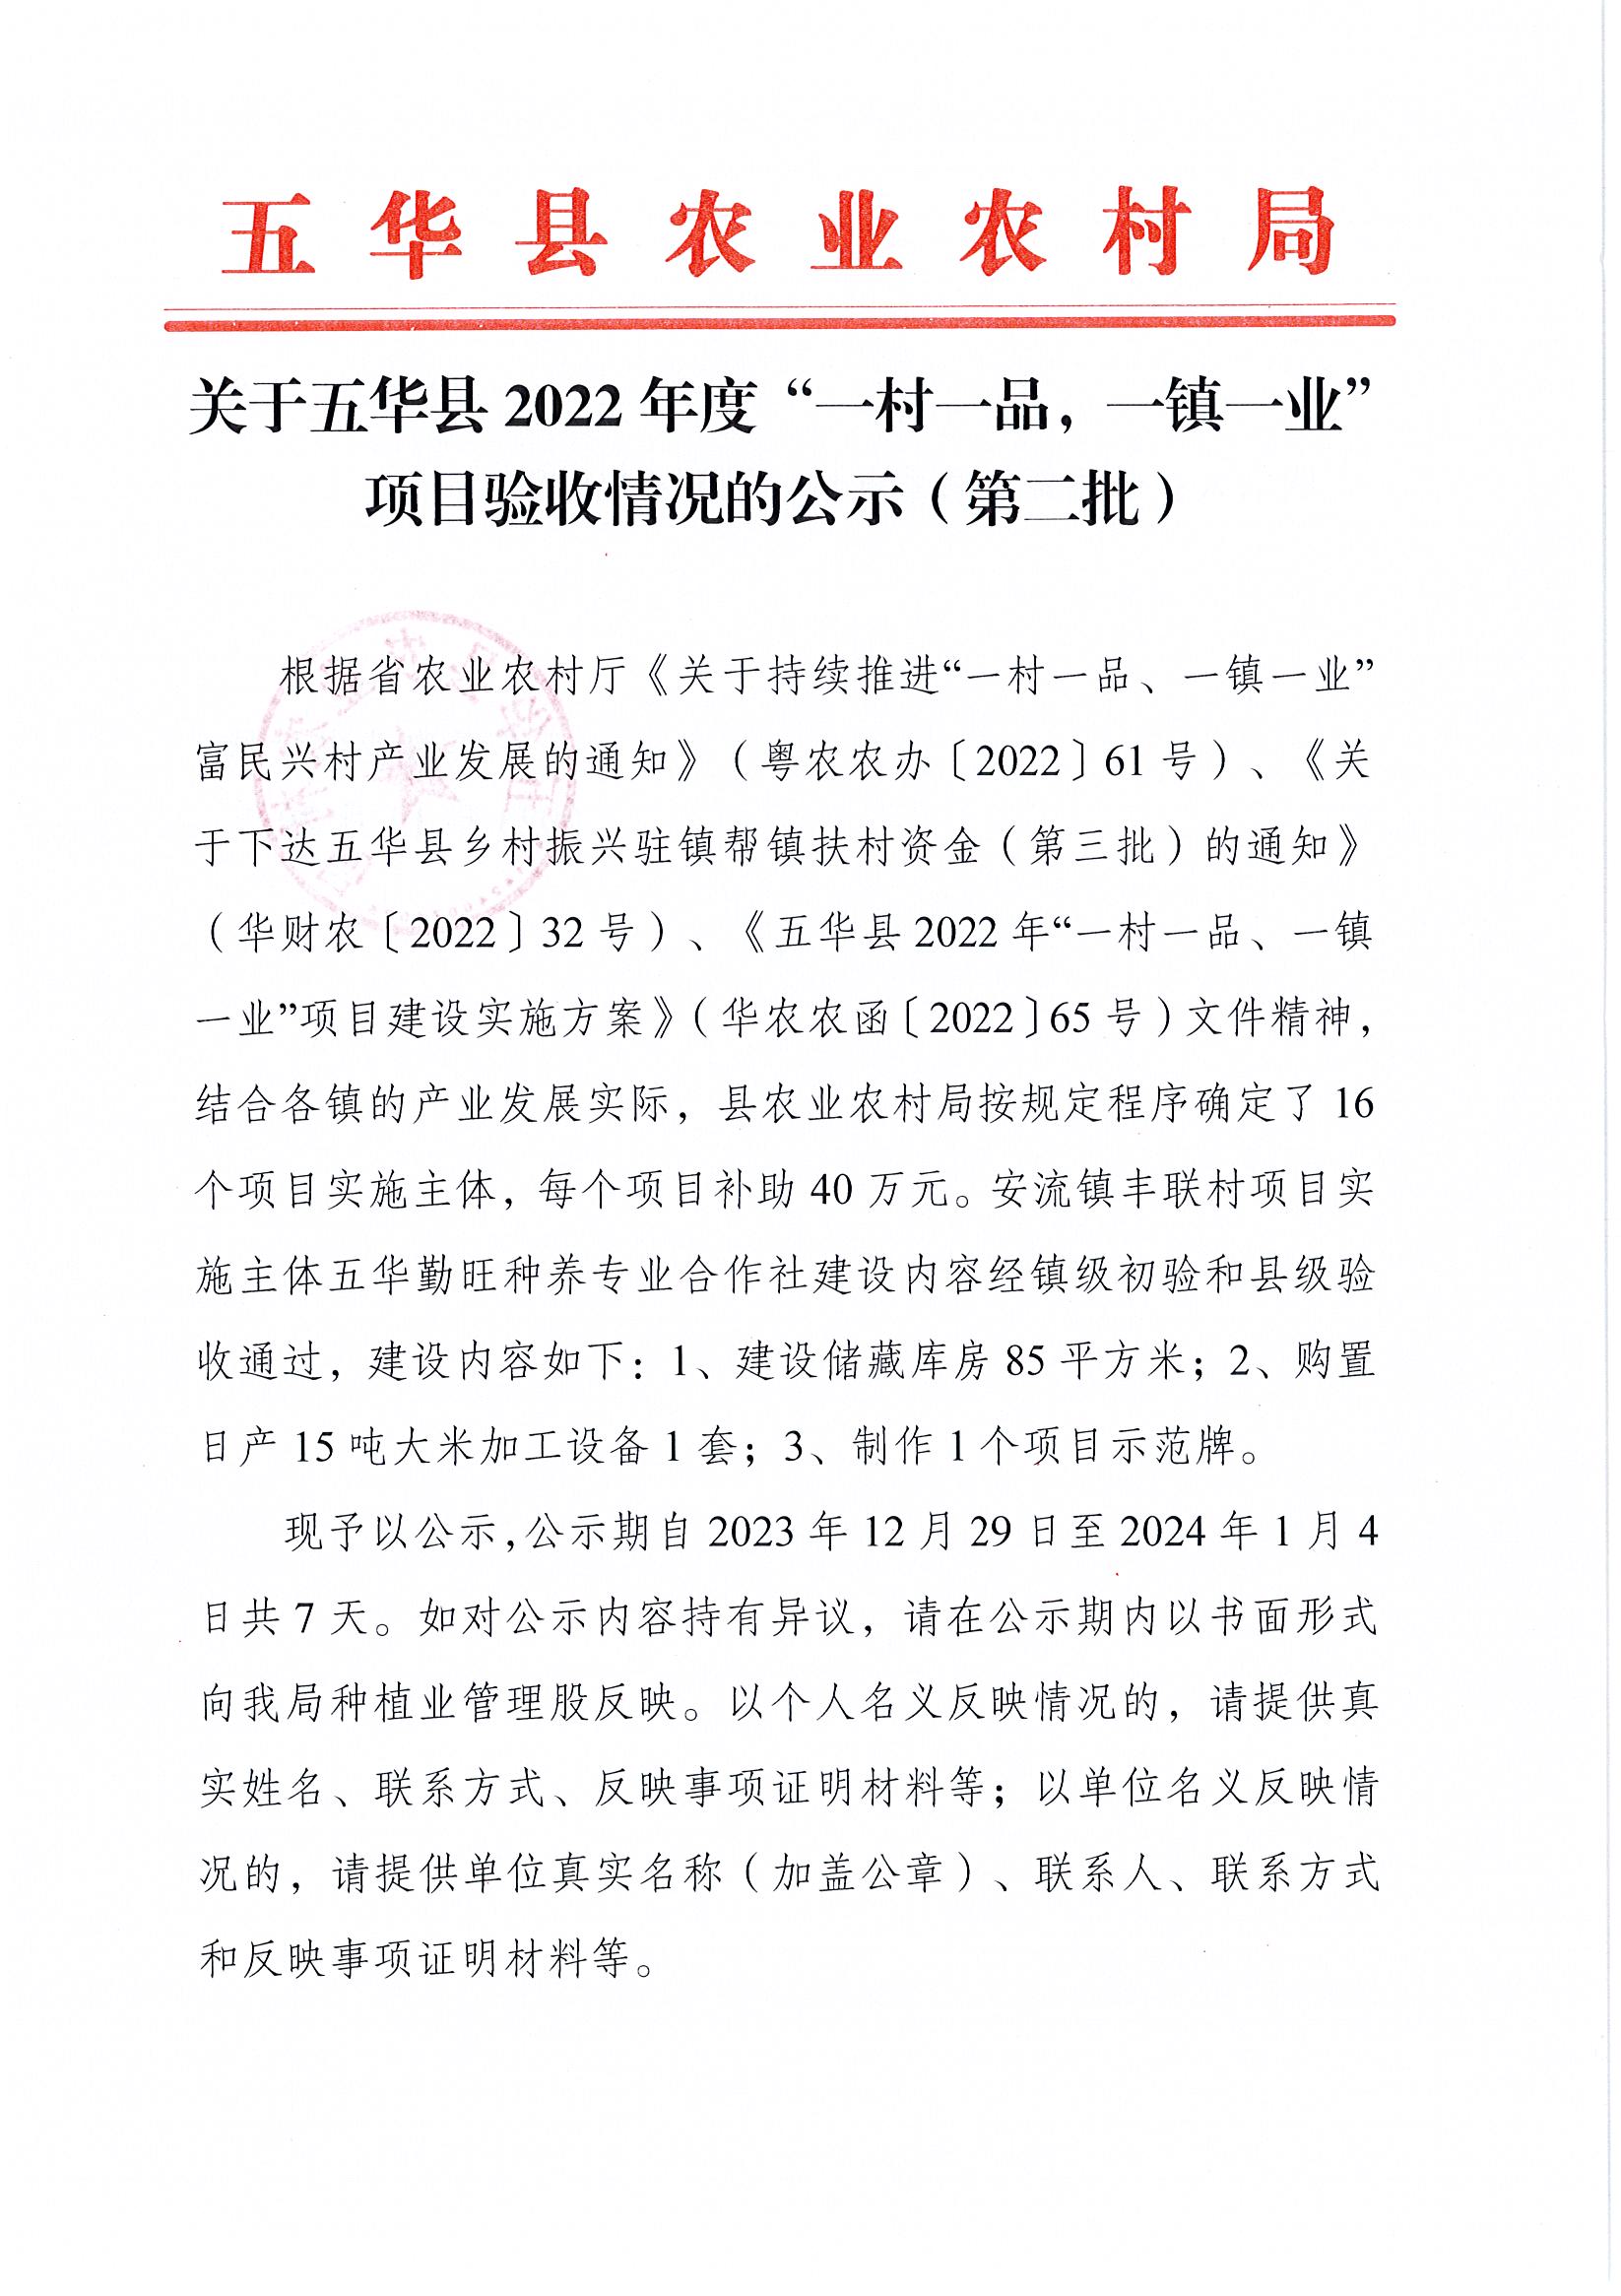 关于五华县2022年度“一村一品，一镇一业”项目验收情况的公示（第二批）.jpg